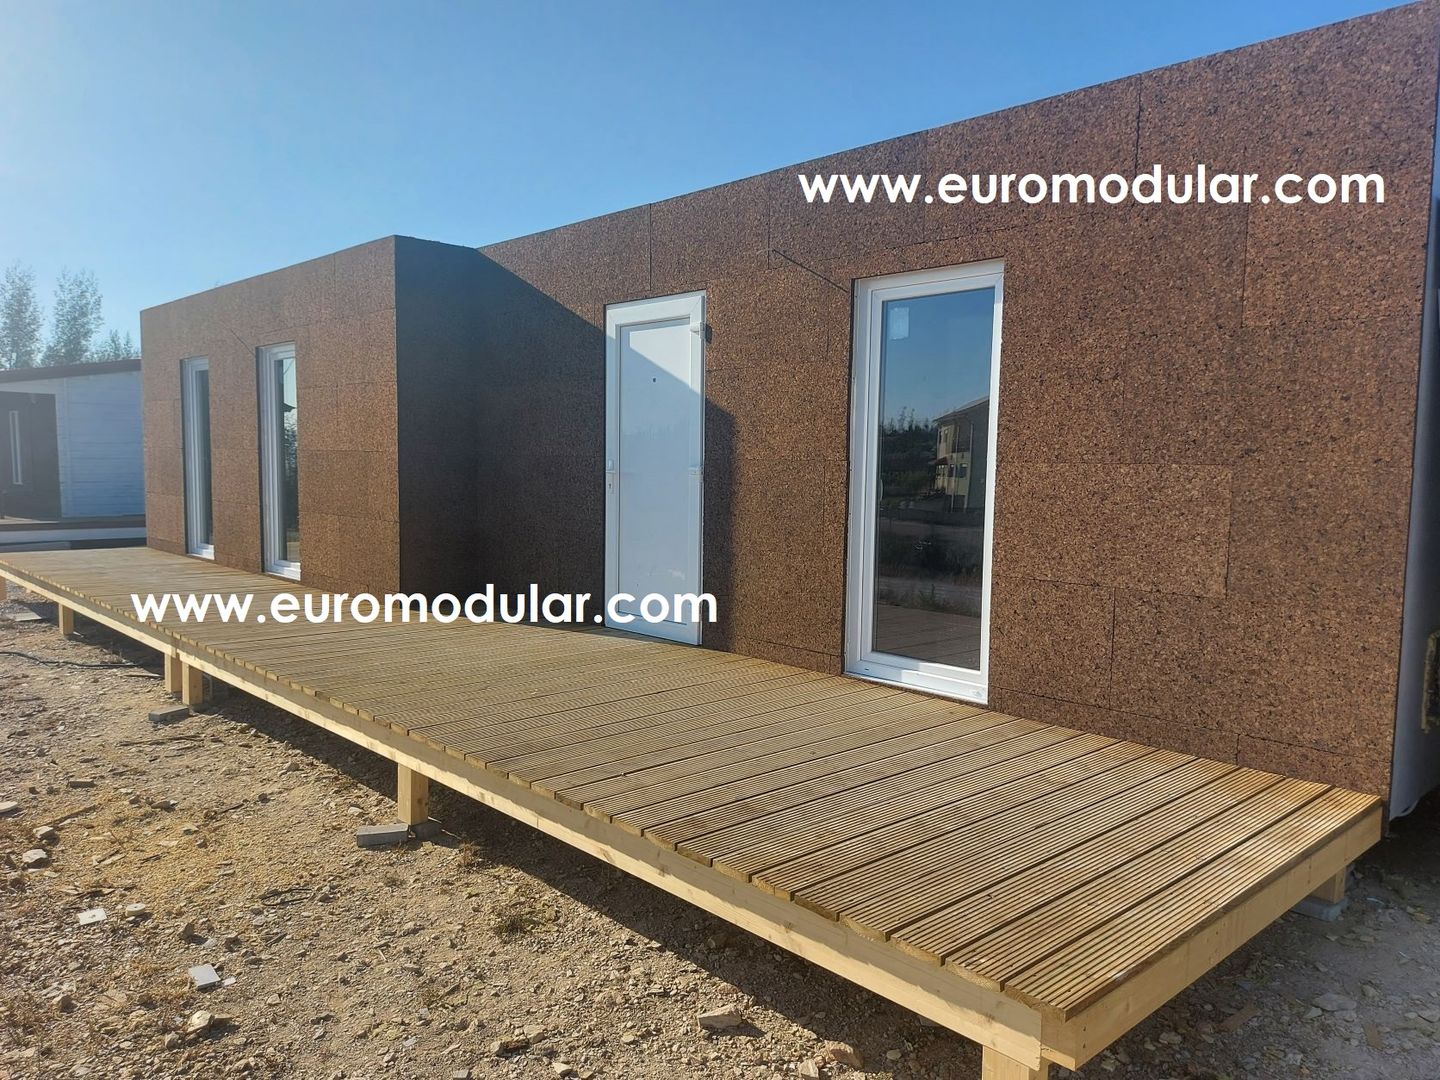 T1 Casa Modular Prefabricada (estrutura metálica), EUROMODULAR EUROMODULAR Dom prefabrykowany